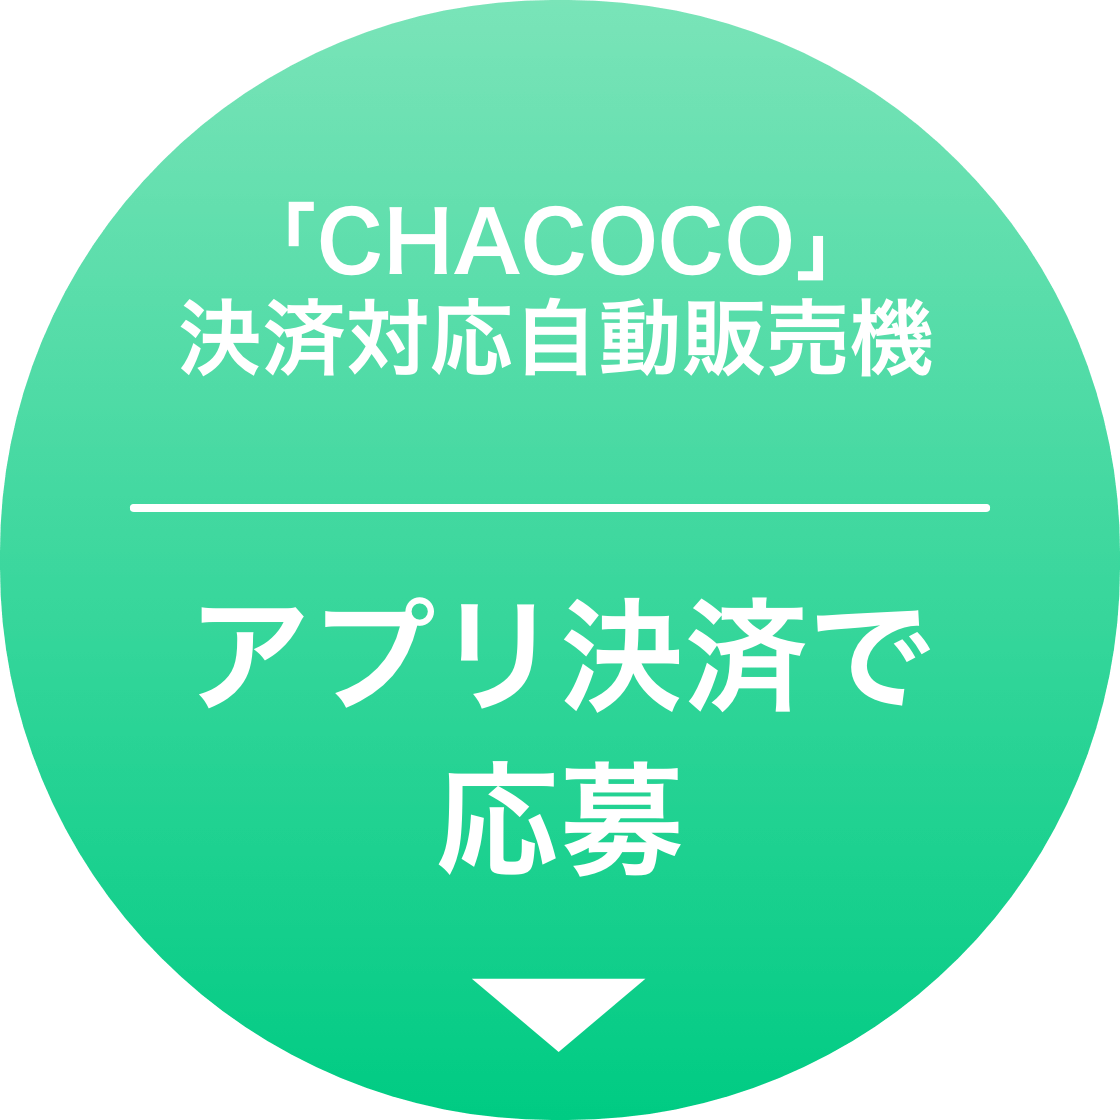 「CHACOCO」決済対応自動販売機